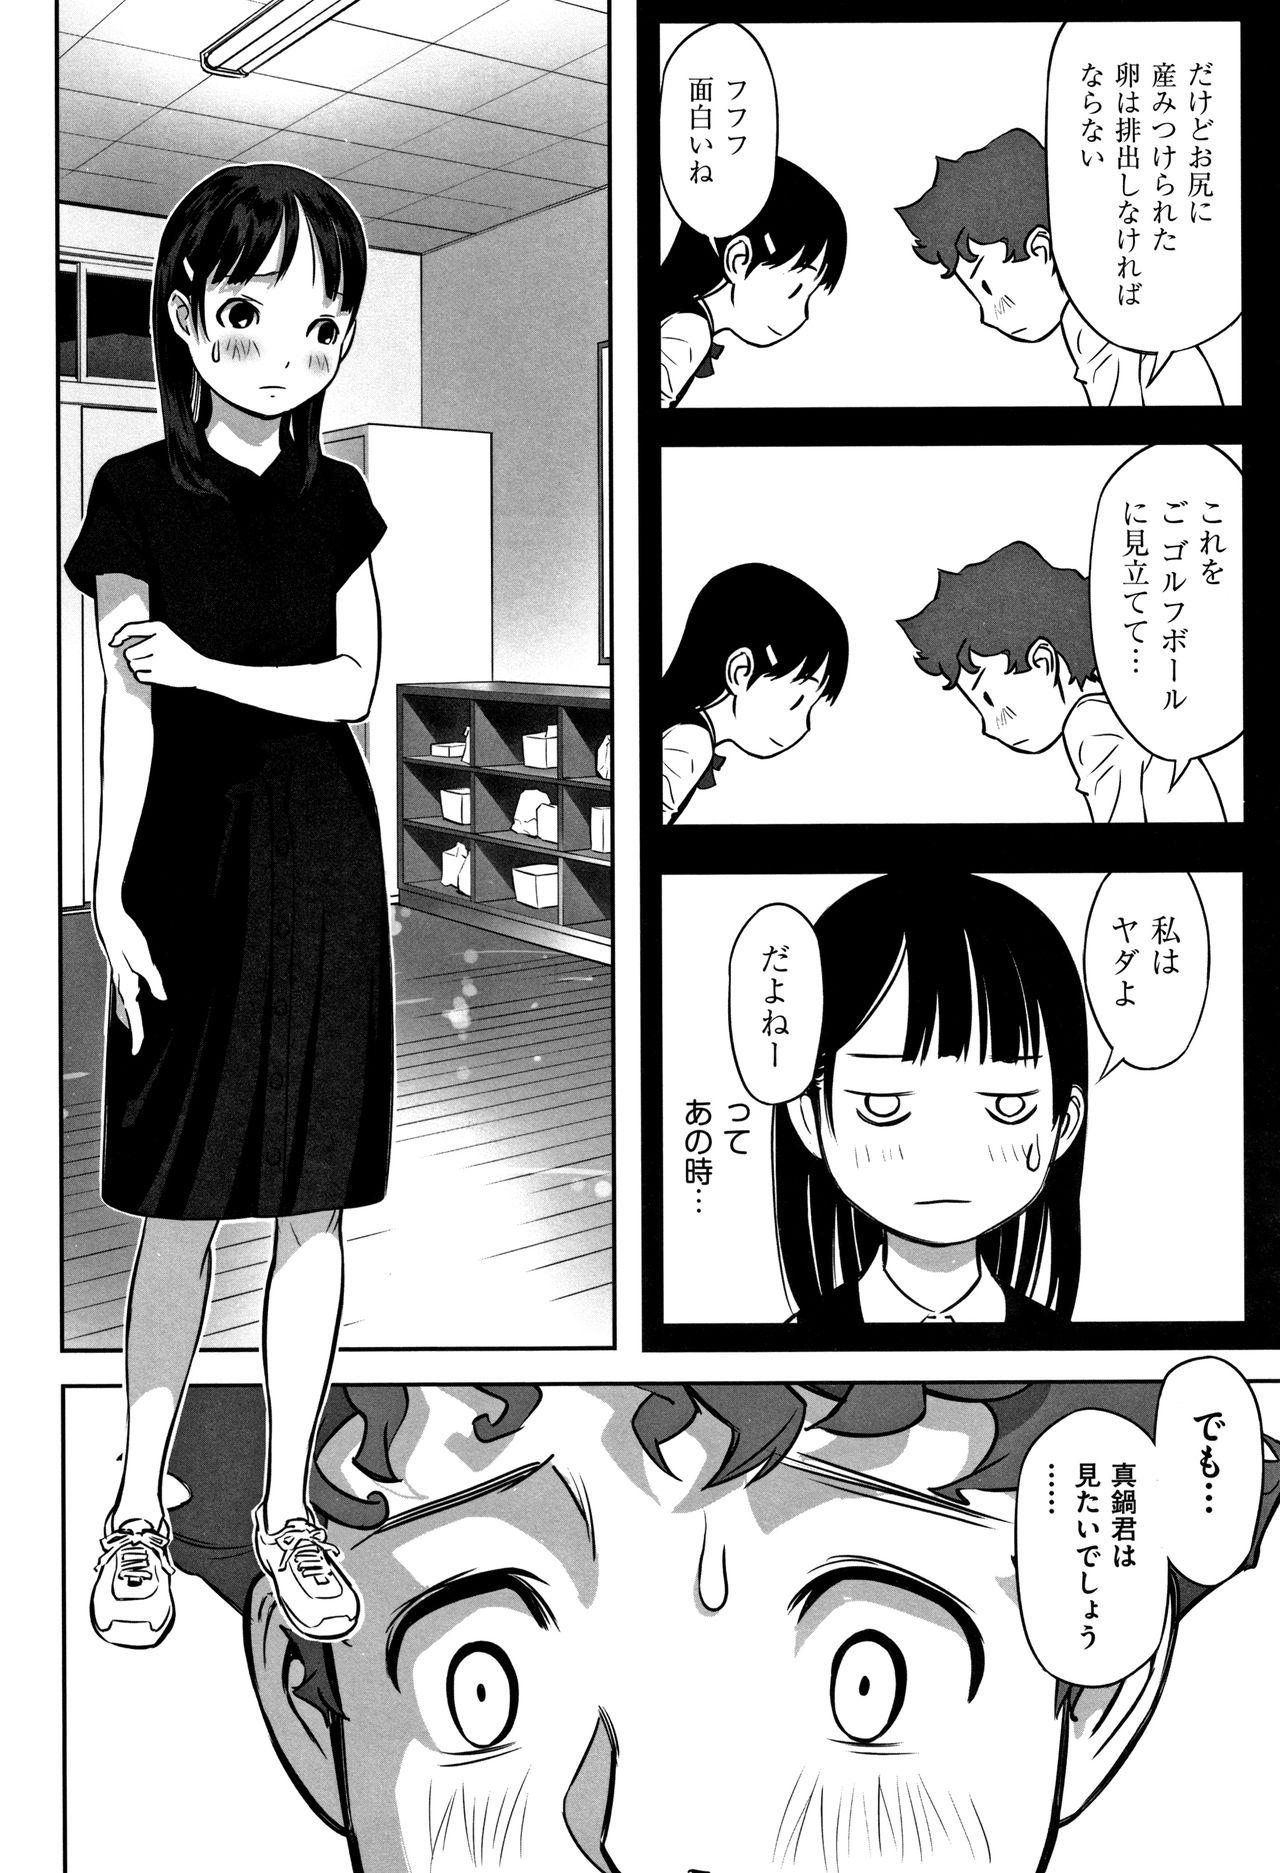 Otokonoko wa Soko no Kouzou ga Shiritai noda Page 41 Of 218.